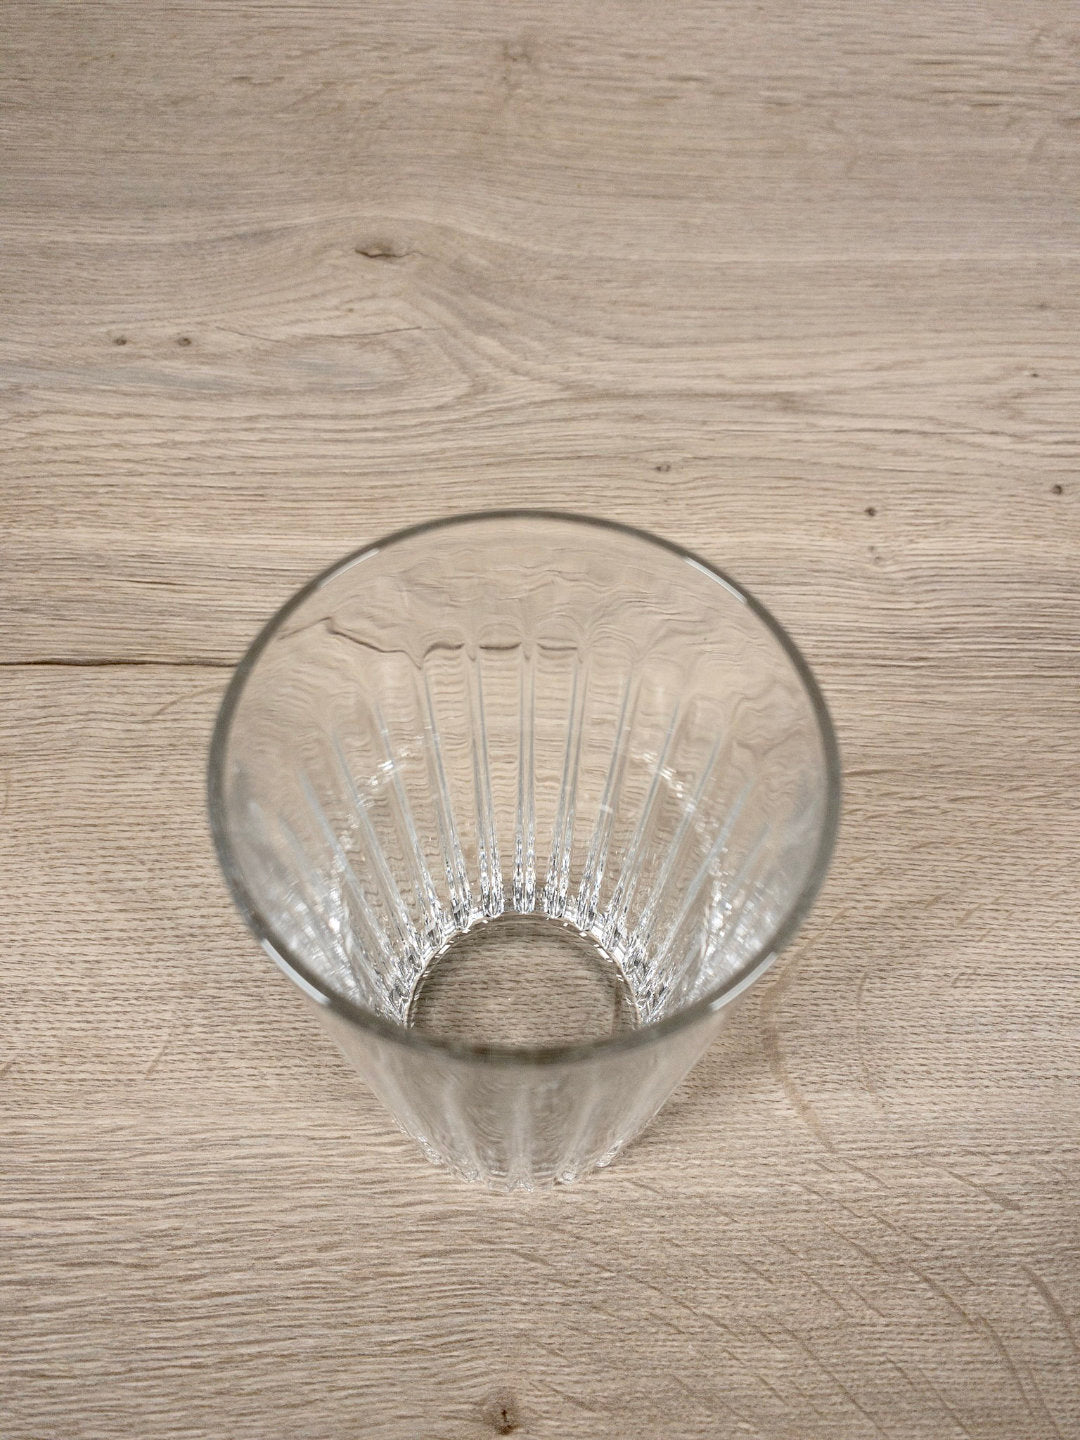 Longdrink Glas - 79 - Longdrinkglas - Schott Zwiesel